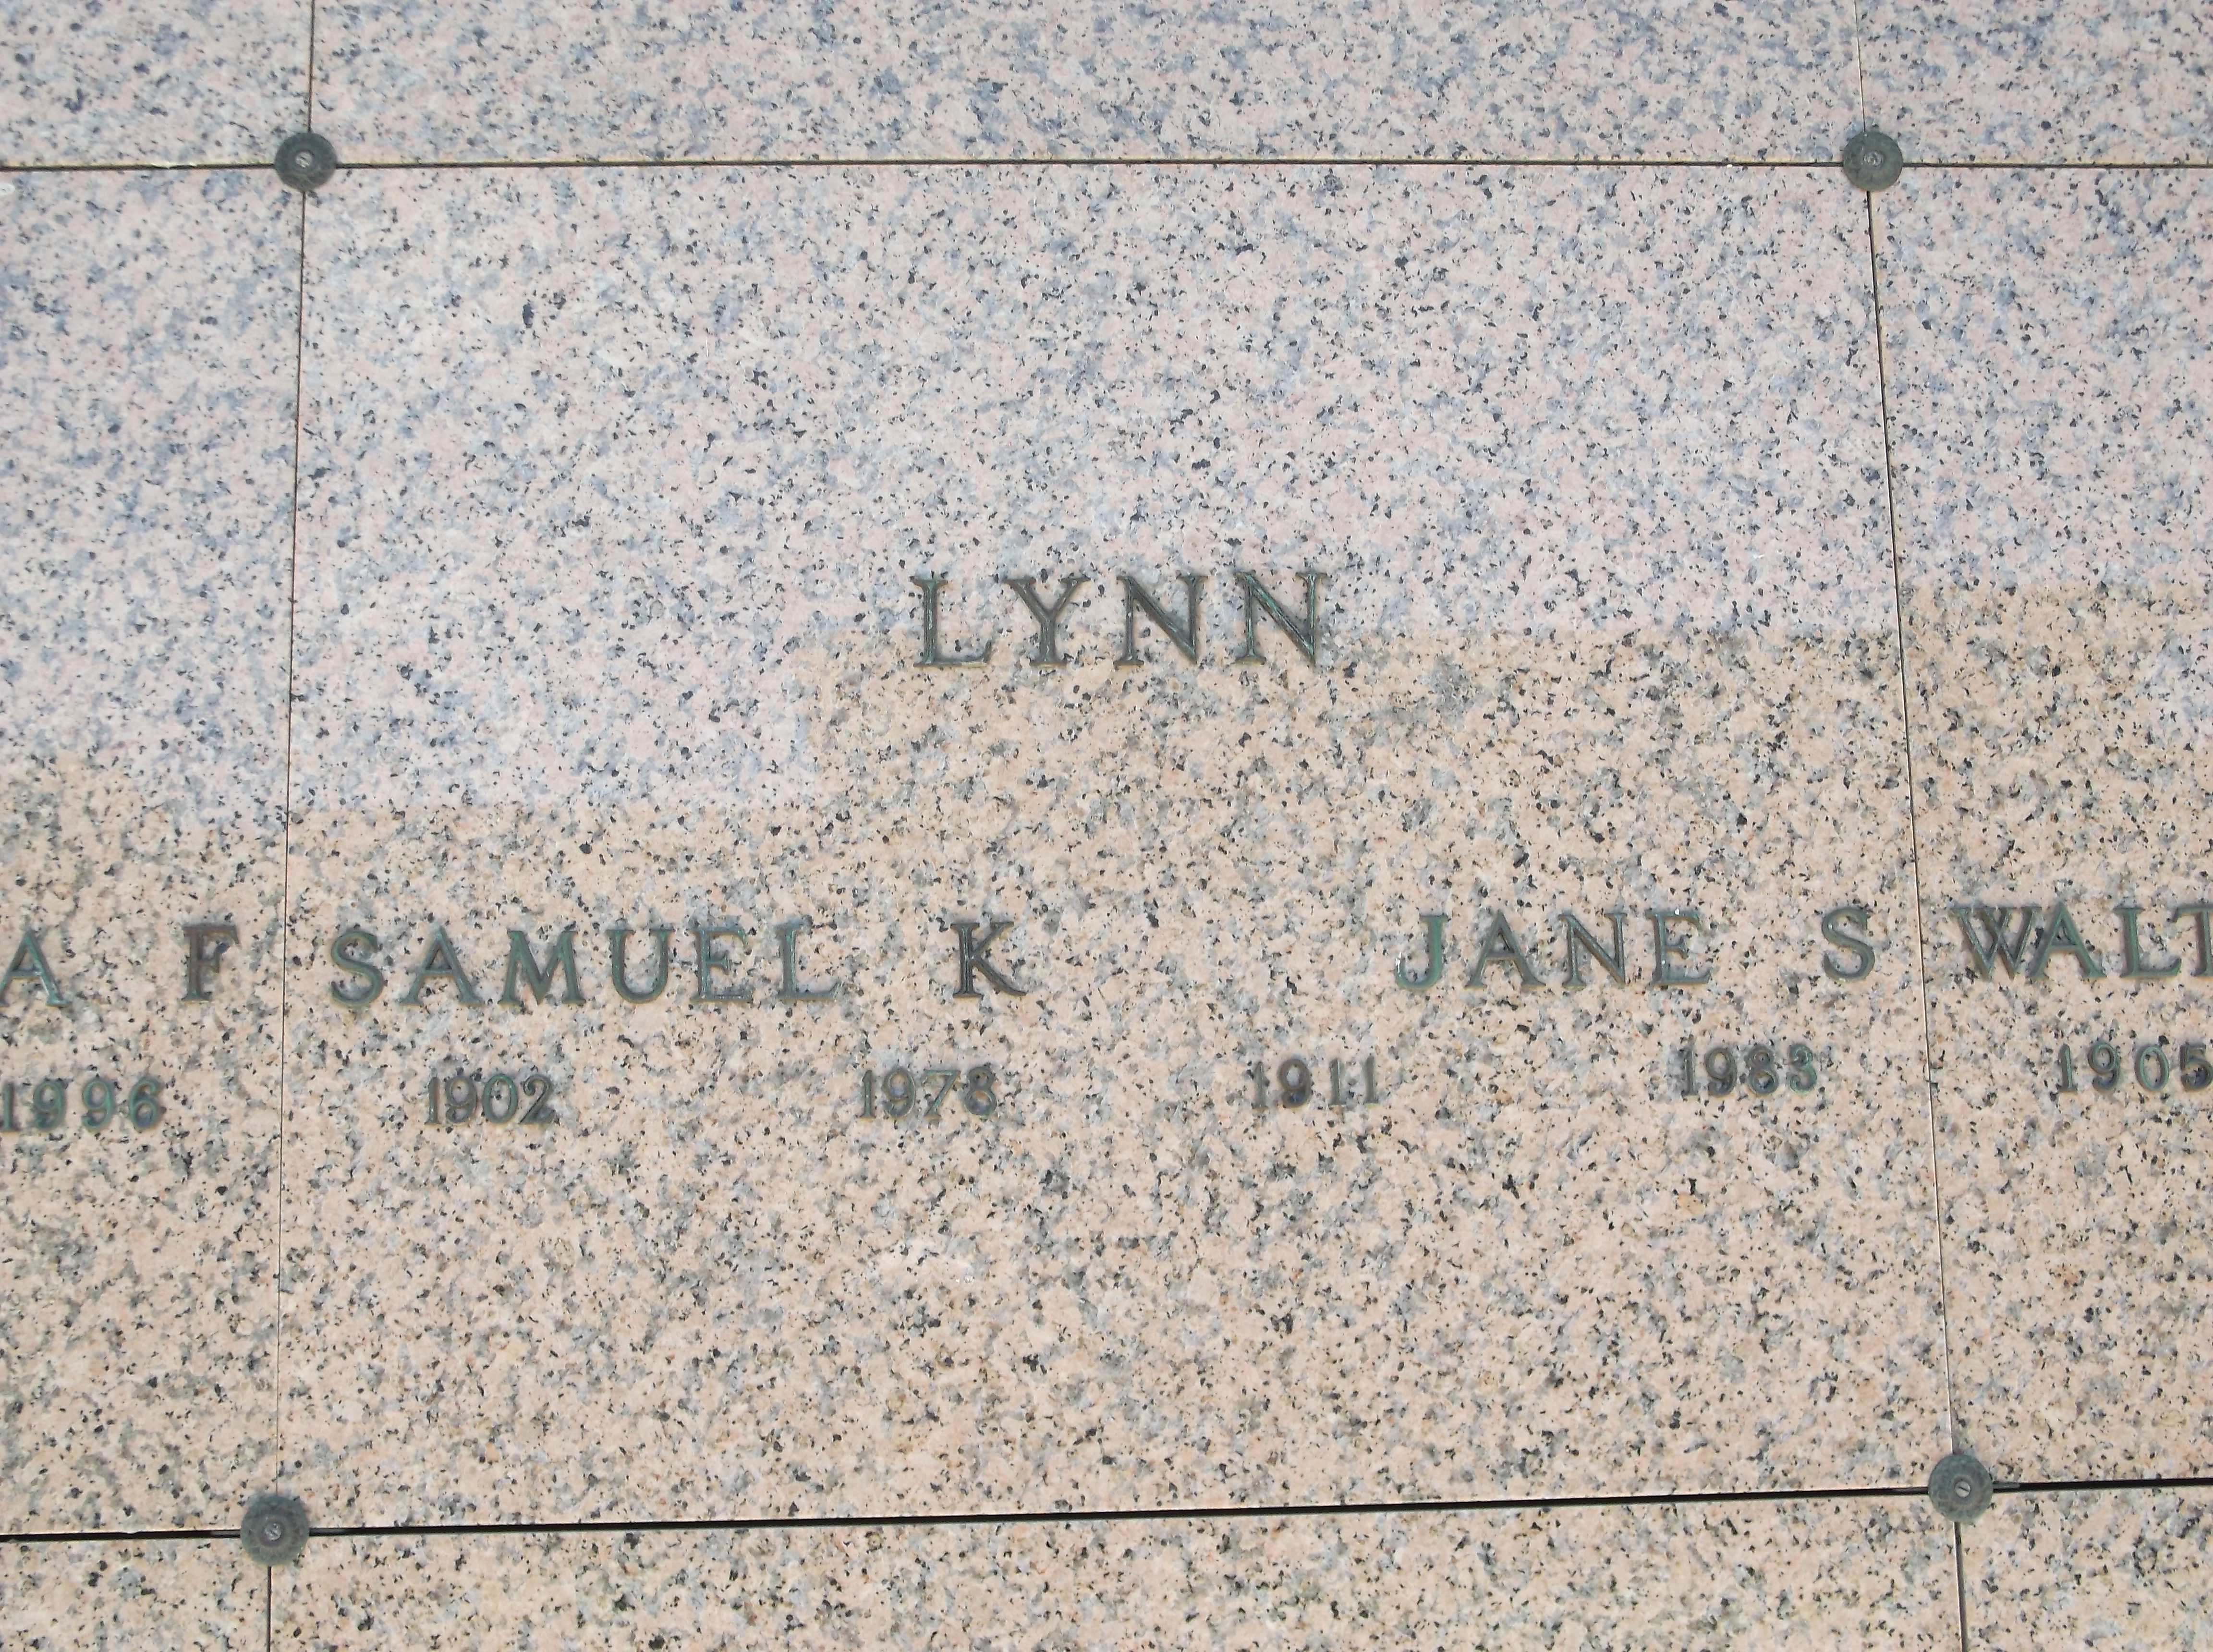 Samuel K Lynn